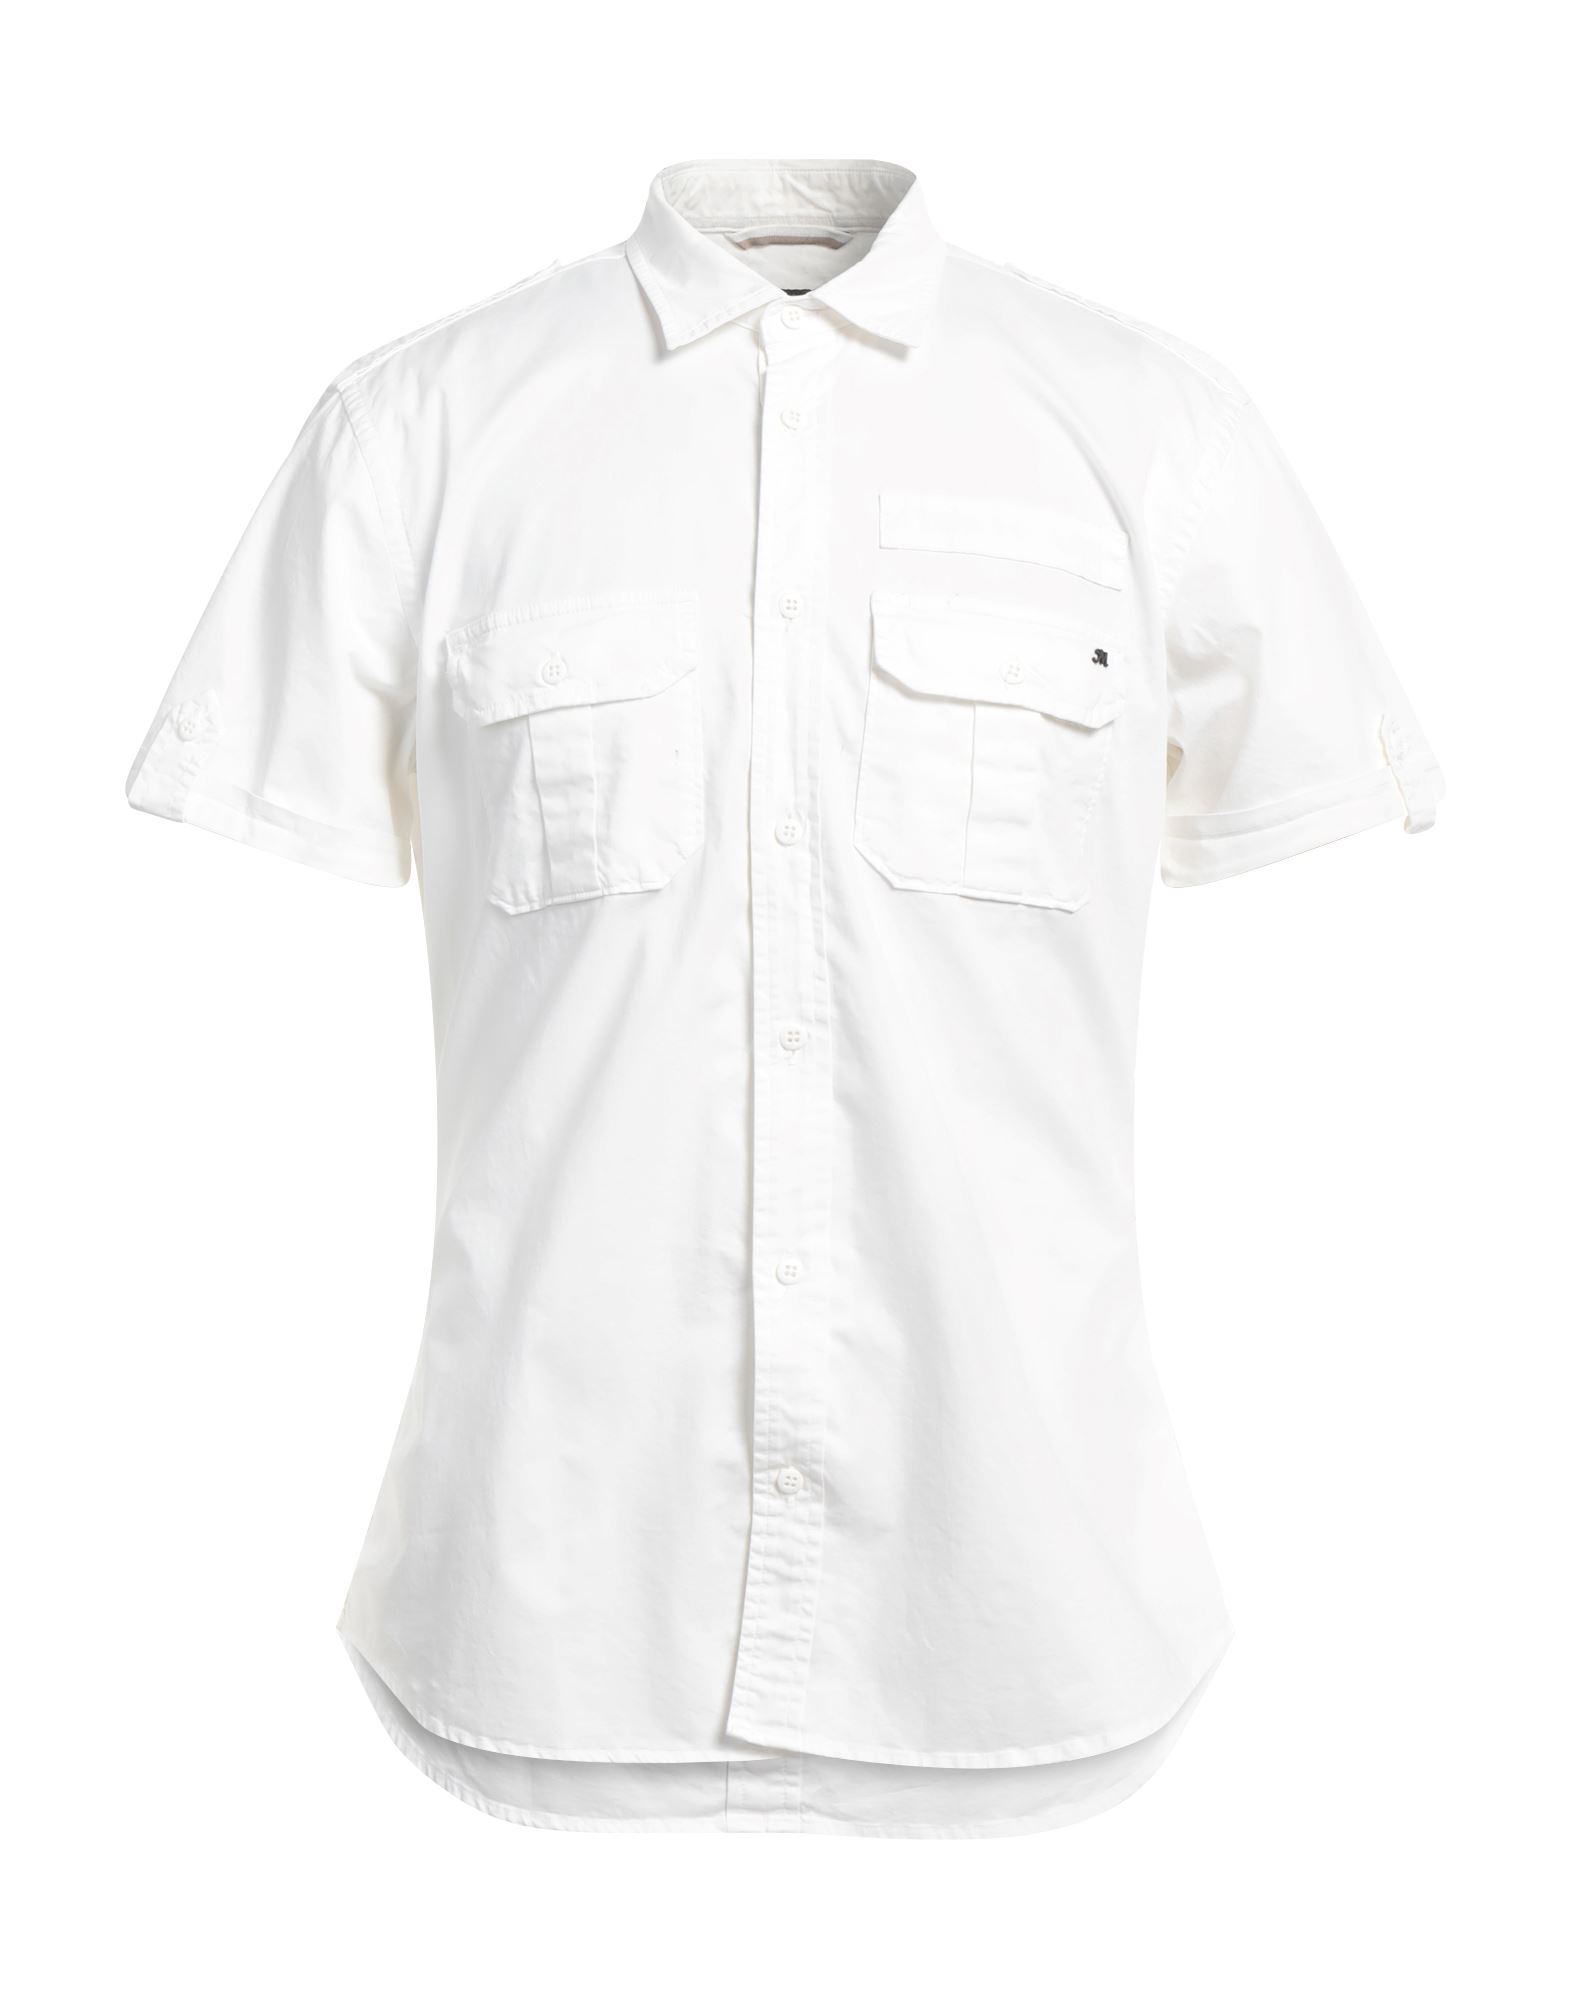 Mason's Man Shirt White Size Xl Cotton, Elastane